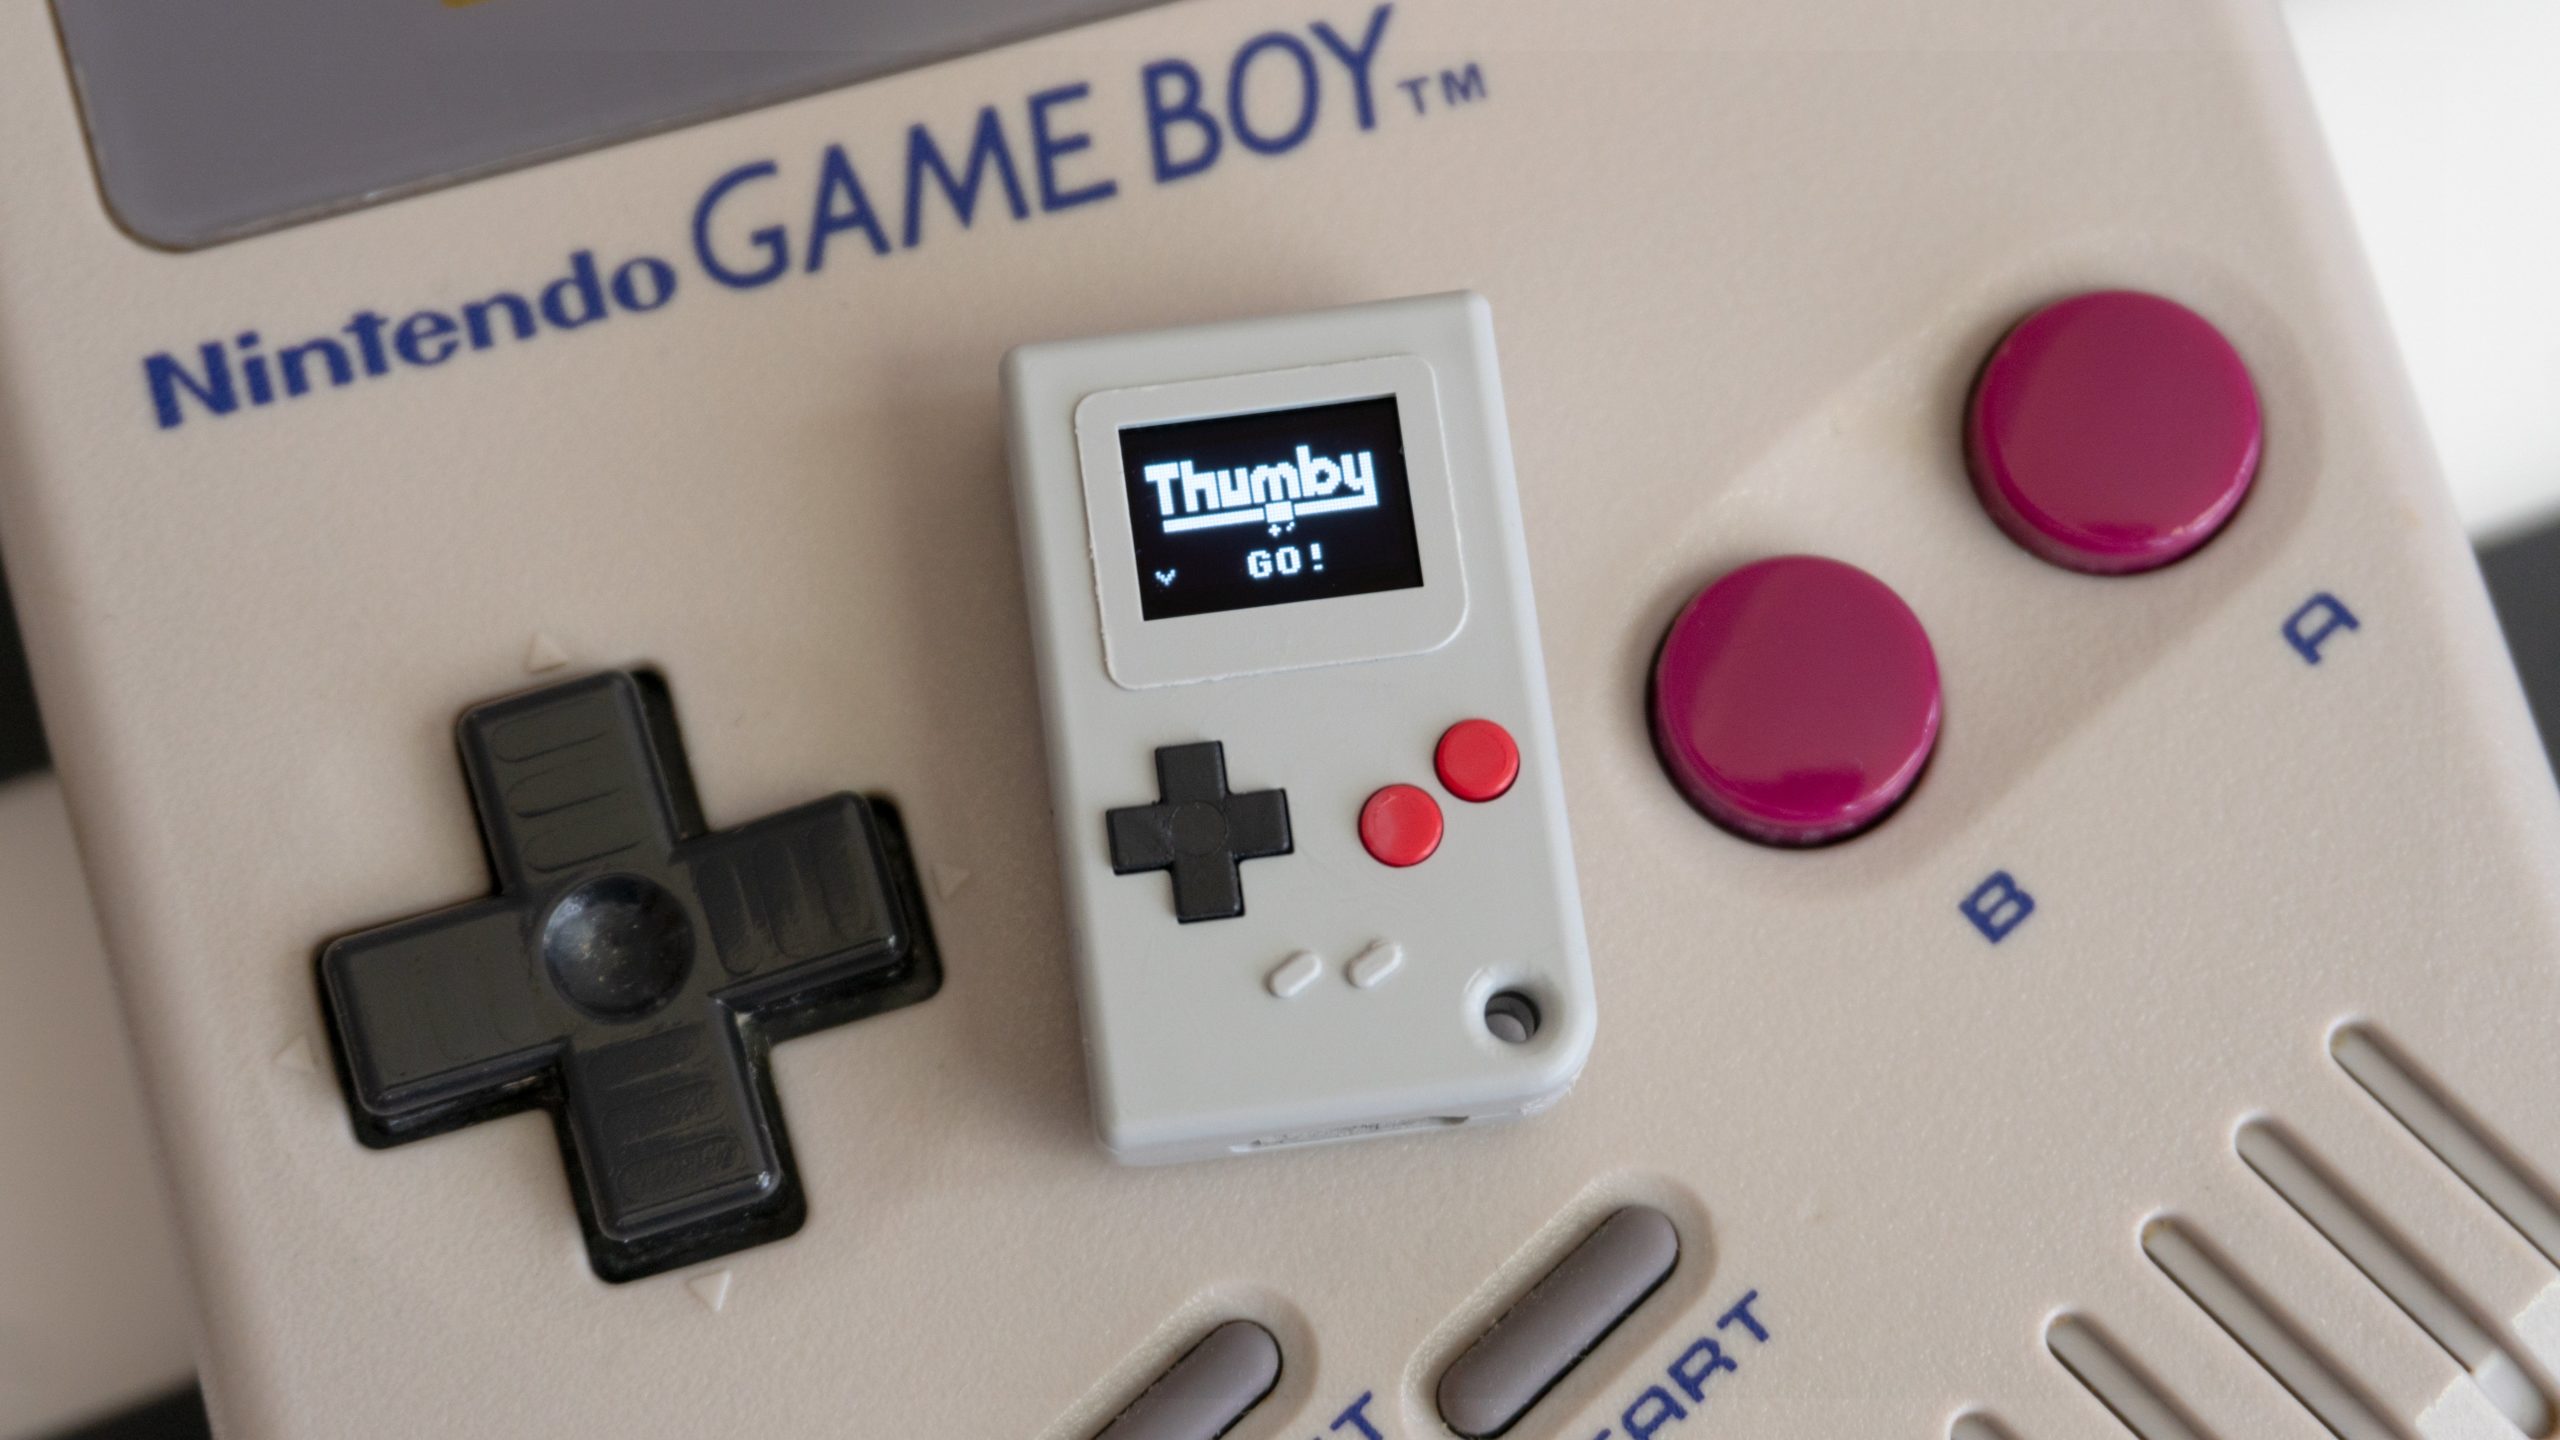 The original Game Boy looks enormous compared to the Thumby. (Photo: Andrew Liszewski - Gizmodo)